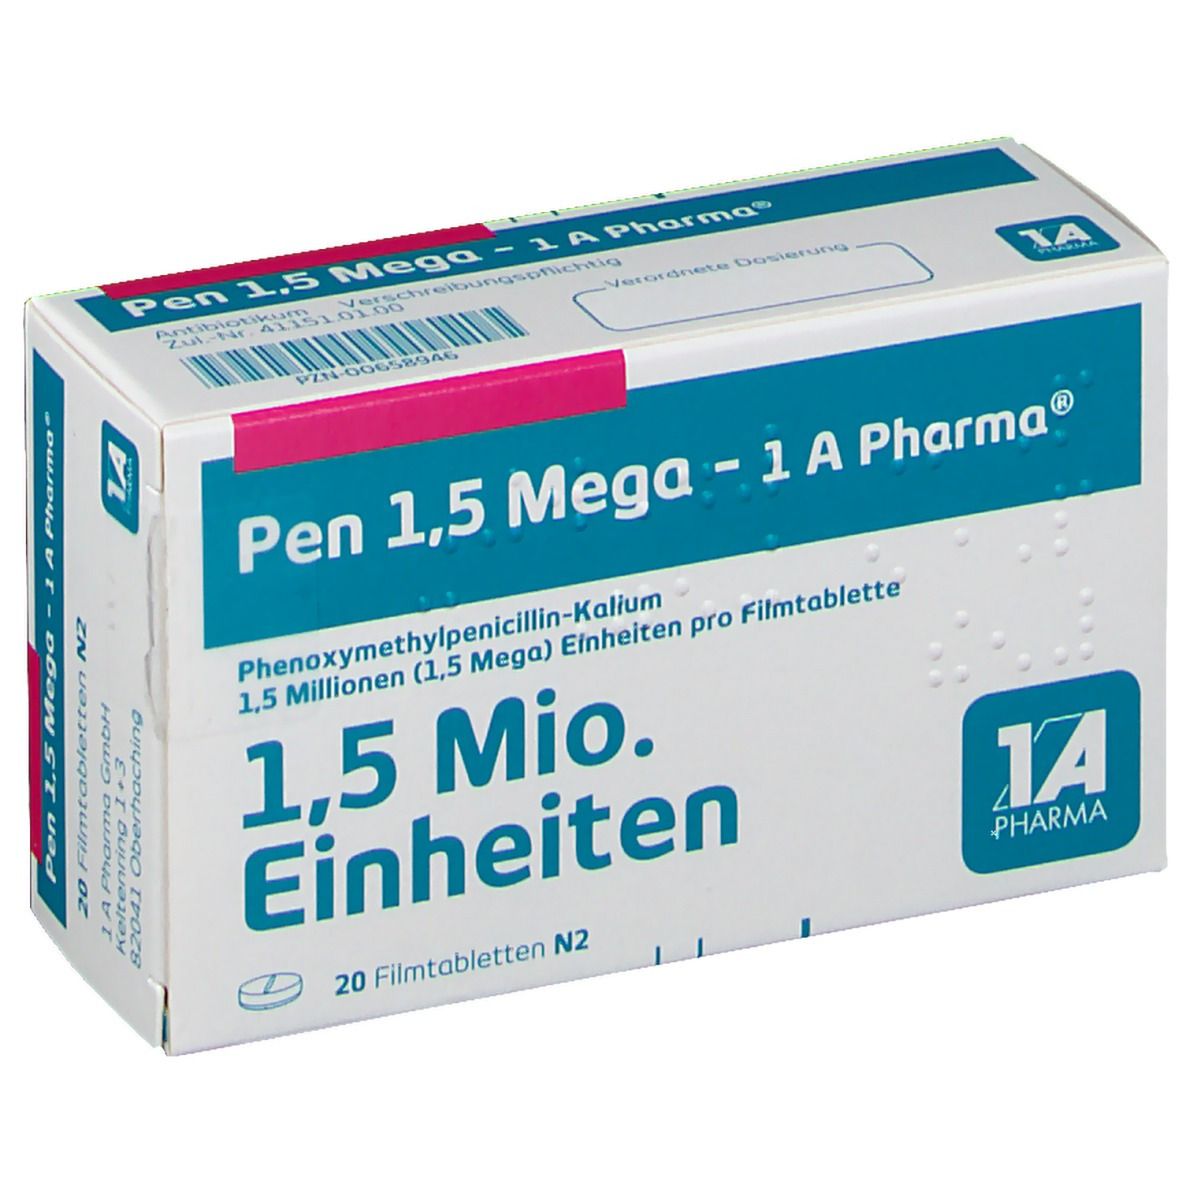 Pen 1.5 Mega 1A Pharma®